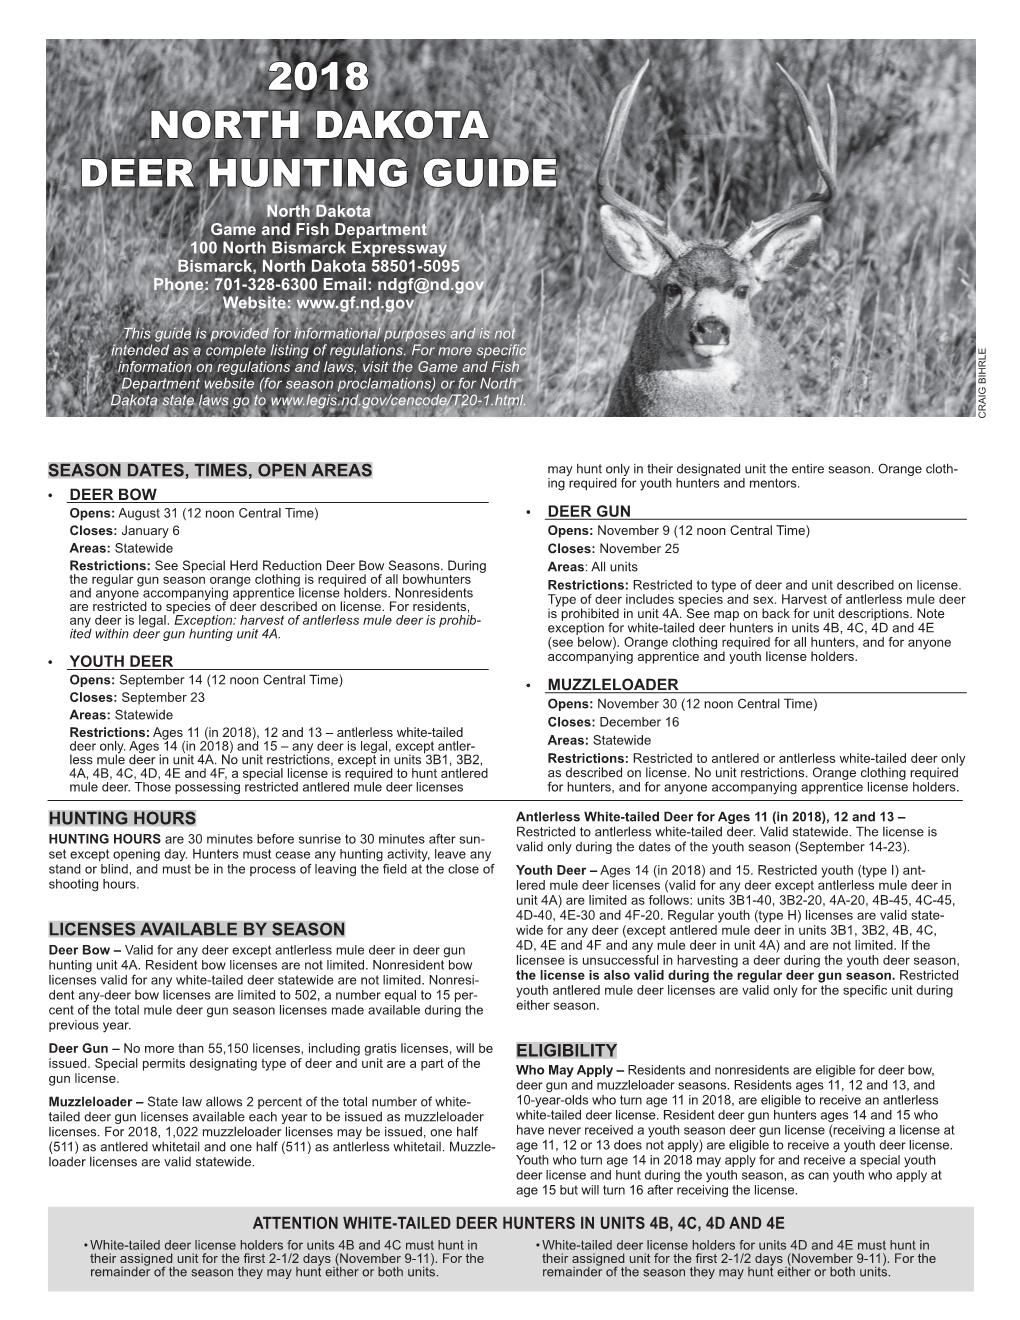 2018 North Dakota Deer Hunting Guide